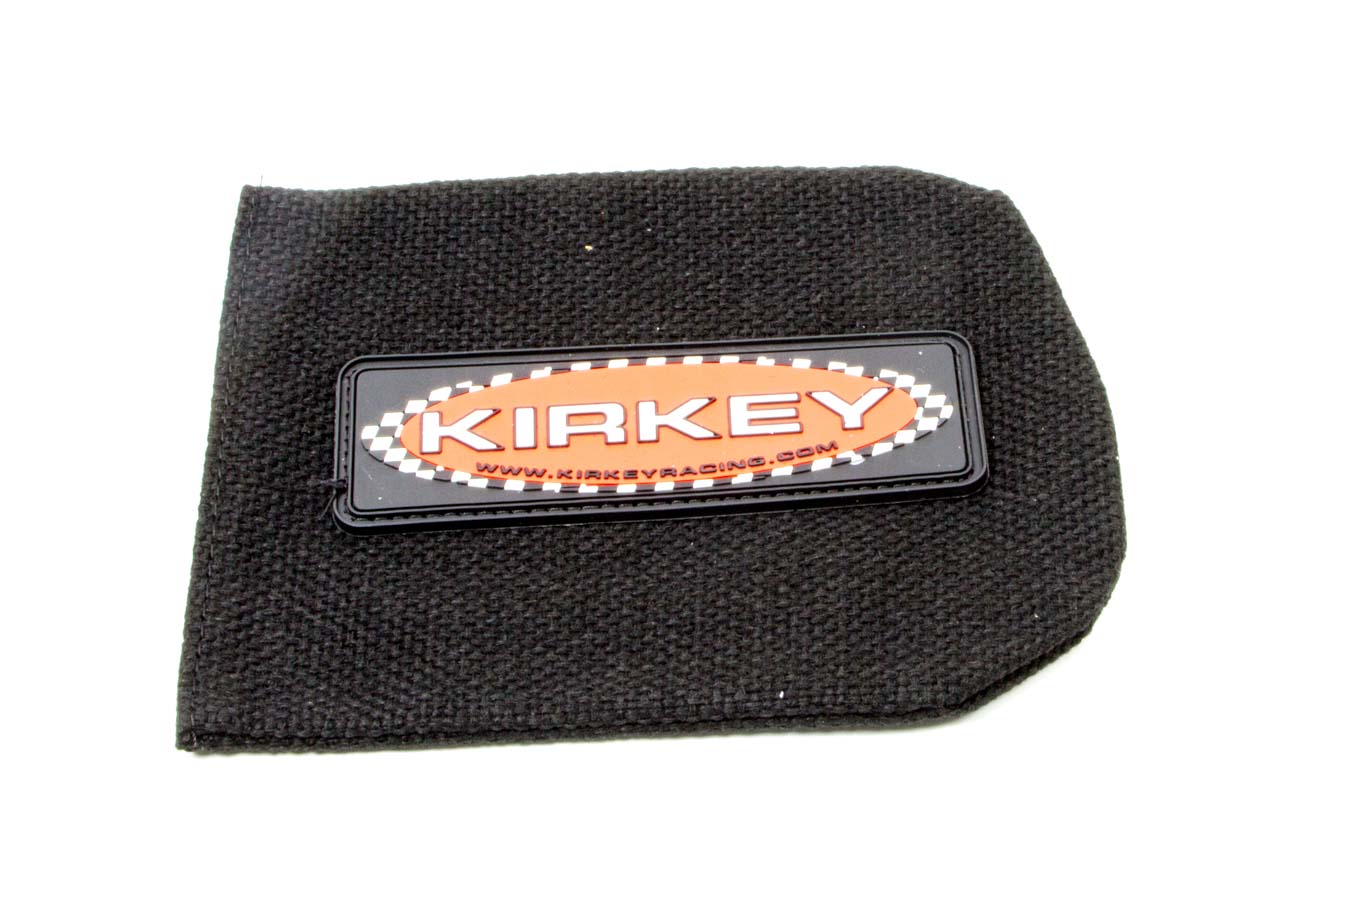 Kirkey Racing Farbrication Sprint Car Steering Pad Black